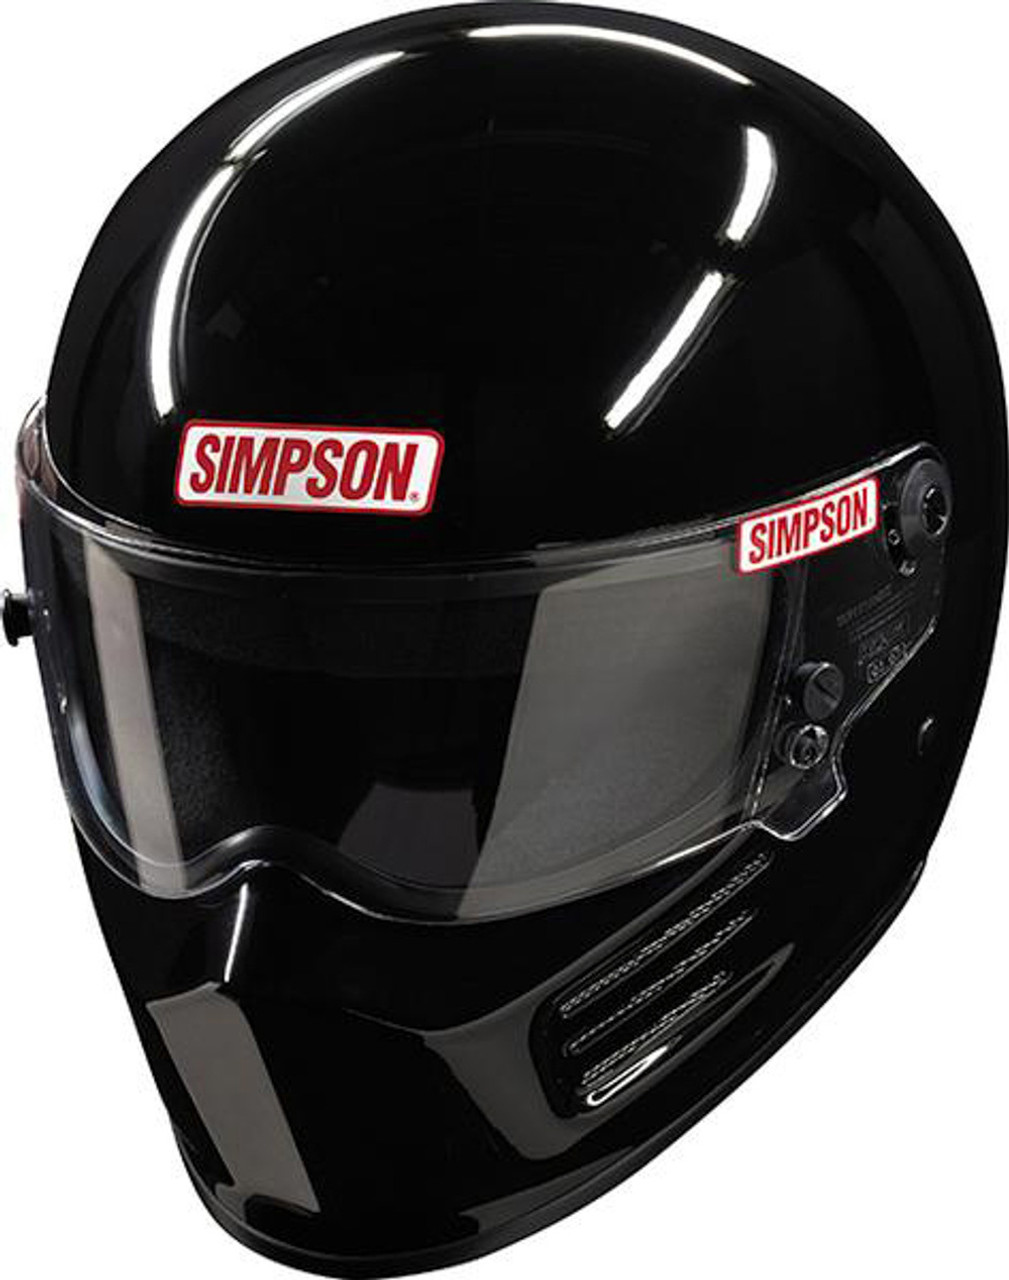 Simpson Safety Helmet Bandit Small Gloss Black SA2020